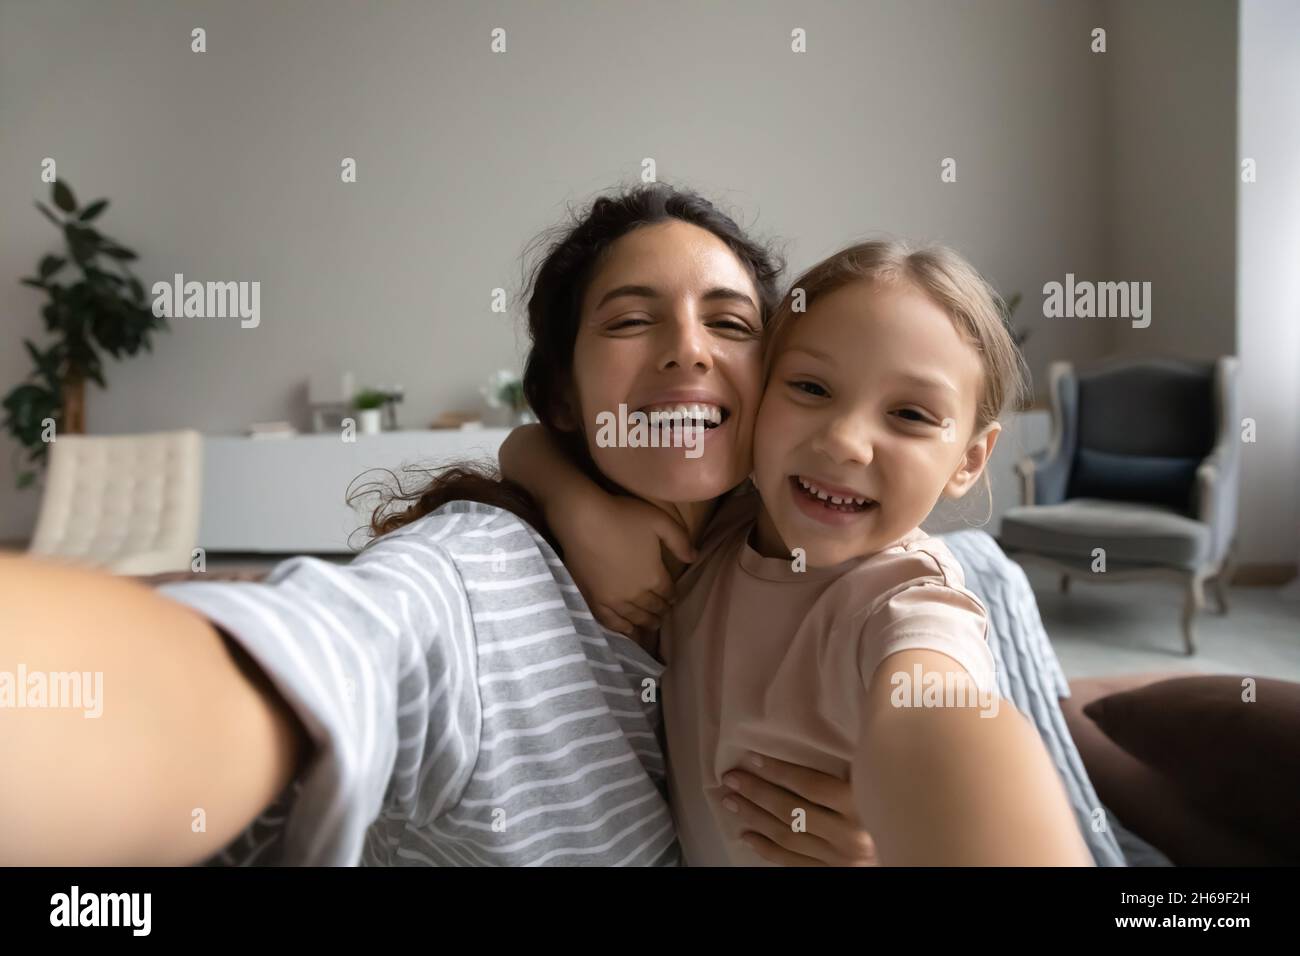 Testa ritratto girato di madre sorridente e figlia prendendo selfie Foto Stock